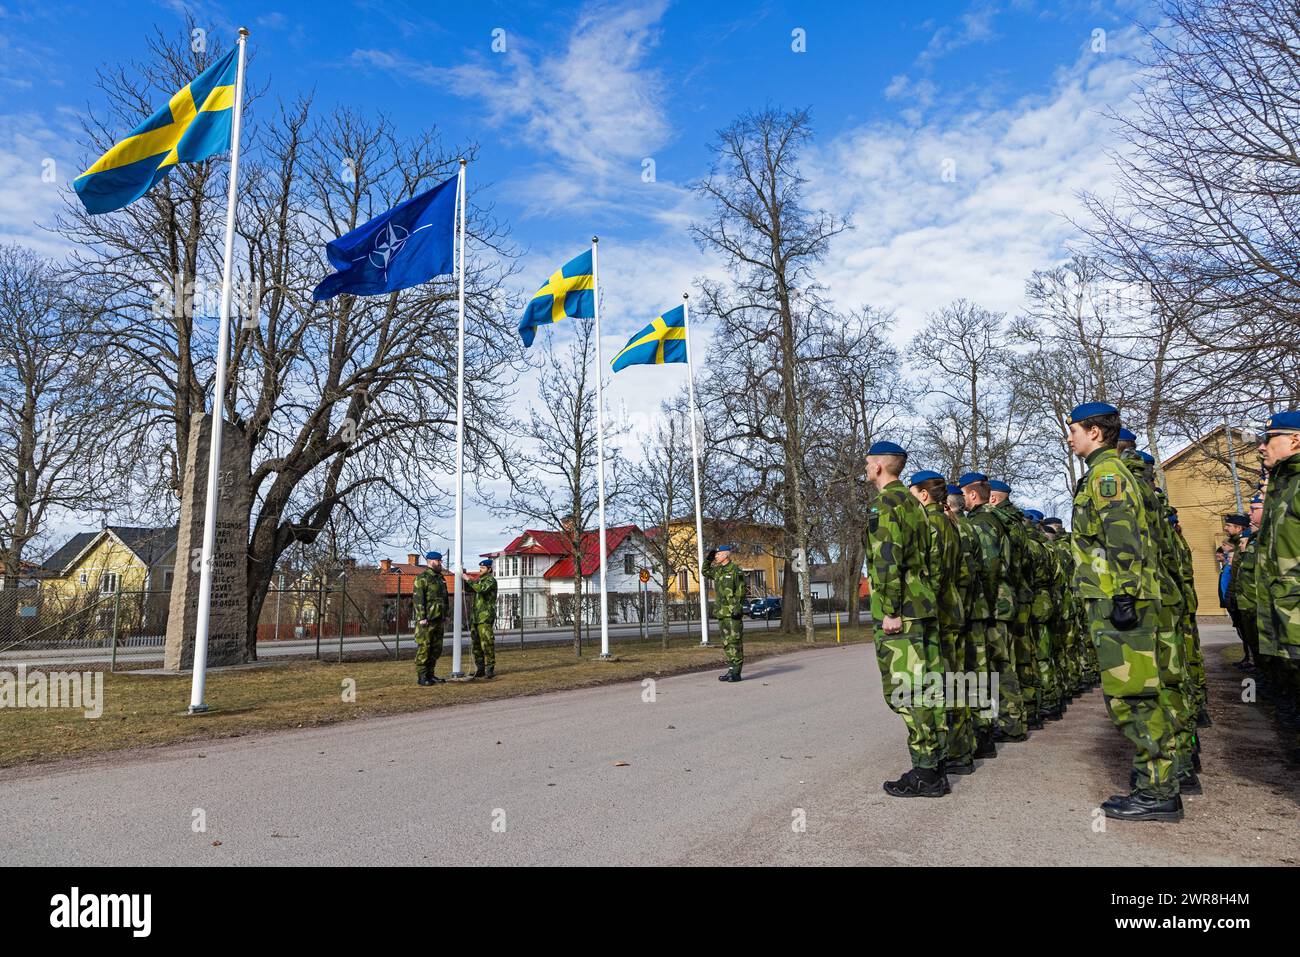 Après ratification par les parlements de tous les pays membres, la Suède est aujourd'hui l'un des 32 membres de l'alliance militaire de l'OTAN. Lundi, une cérémonie a eu lieu à la base aérienne de Malmen, 'Linköpings garnison', pour marquer l'entrée de la Suède dans l'OTAN. Pour la première fois depuis 1814, la Suède fait partie d'une alliance militaire. Banque D'Images